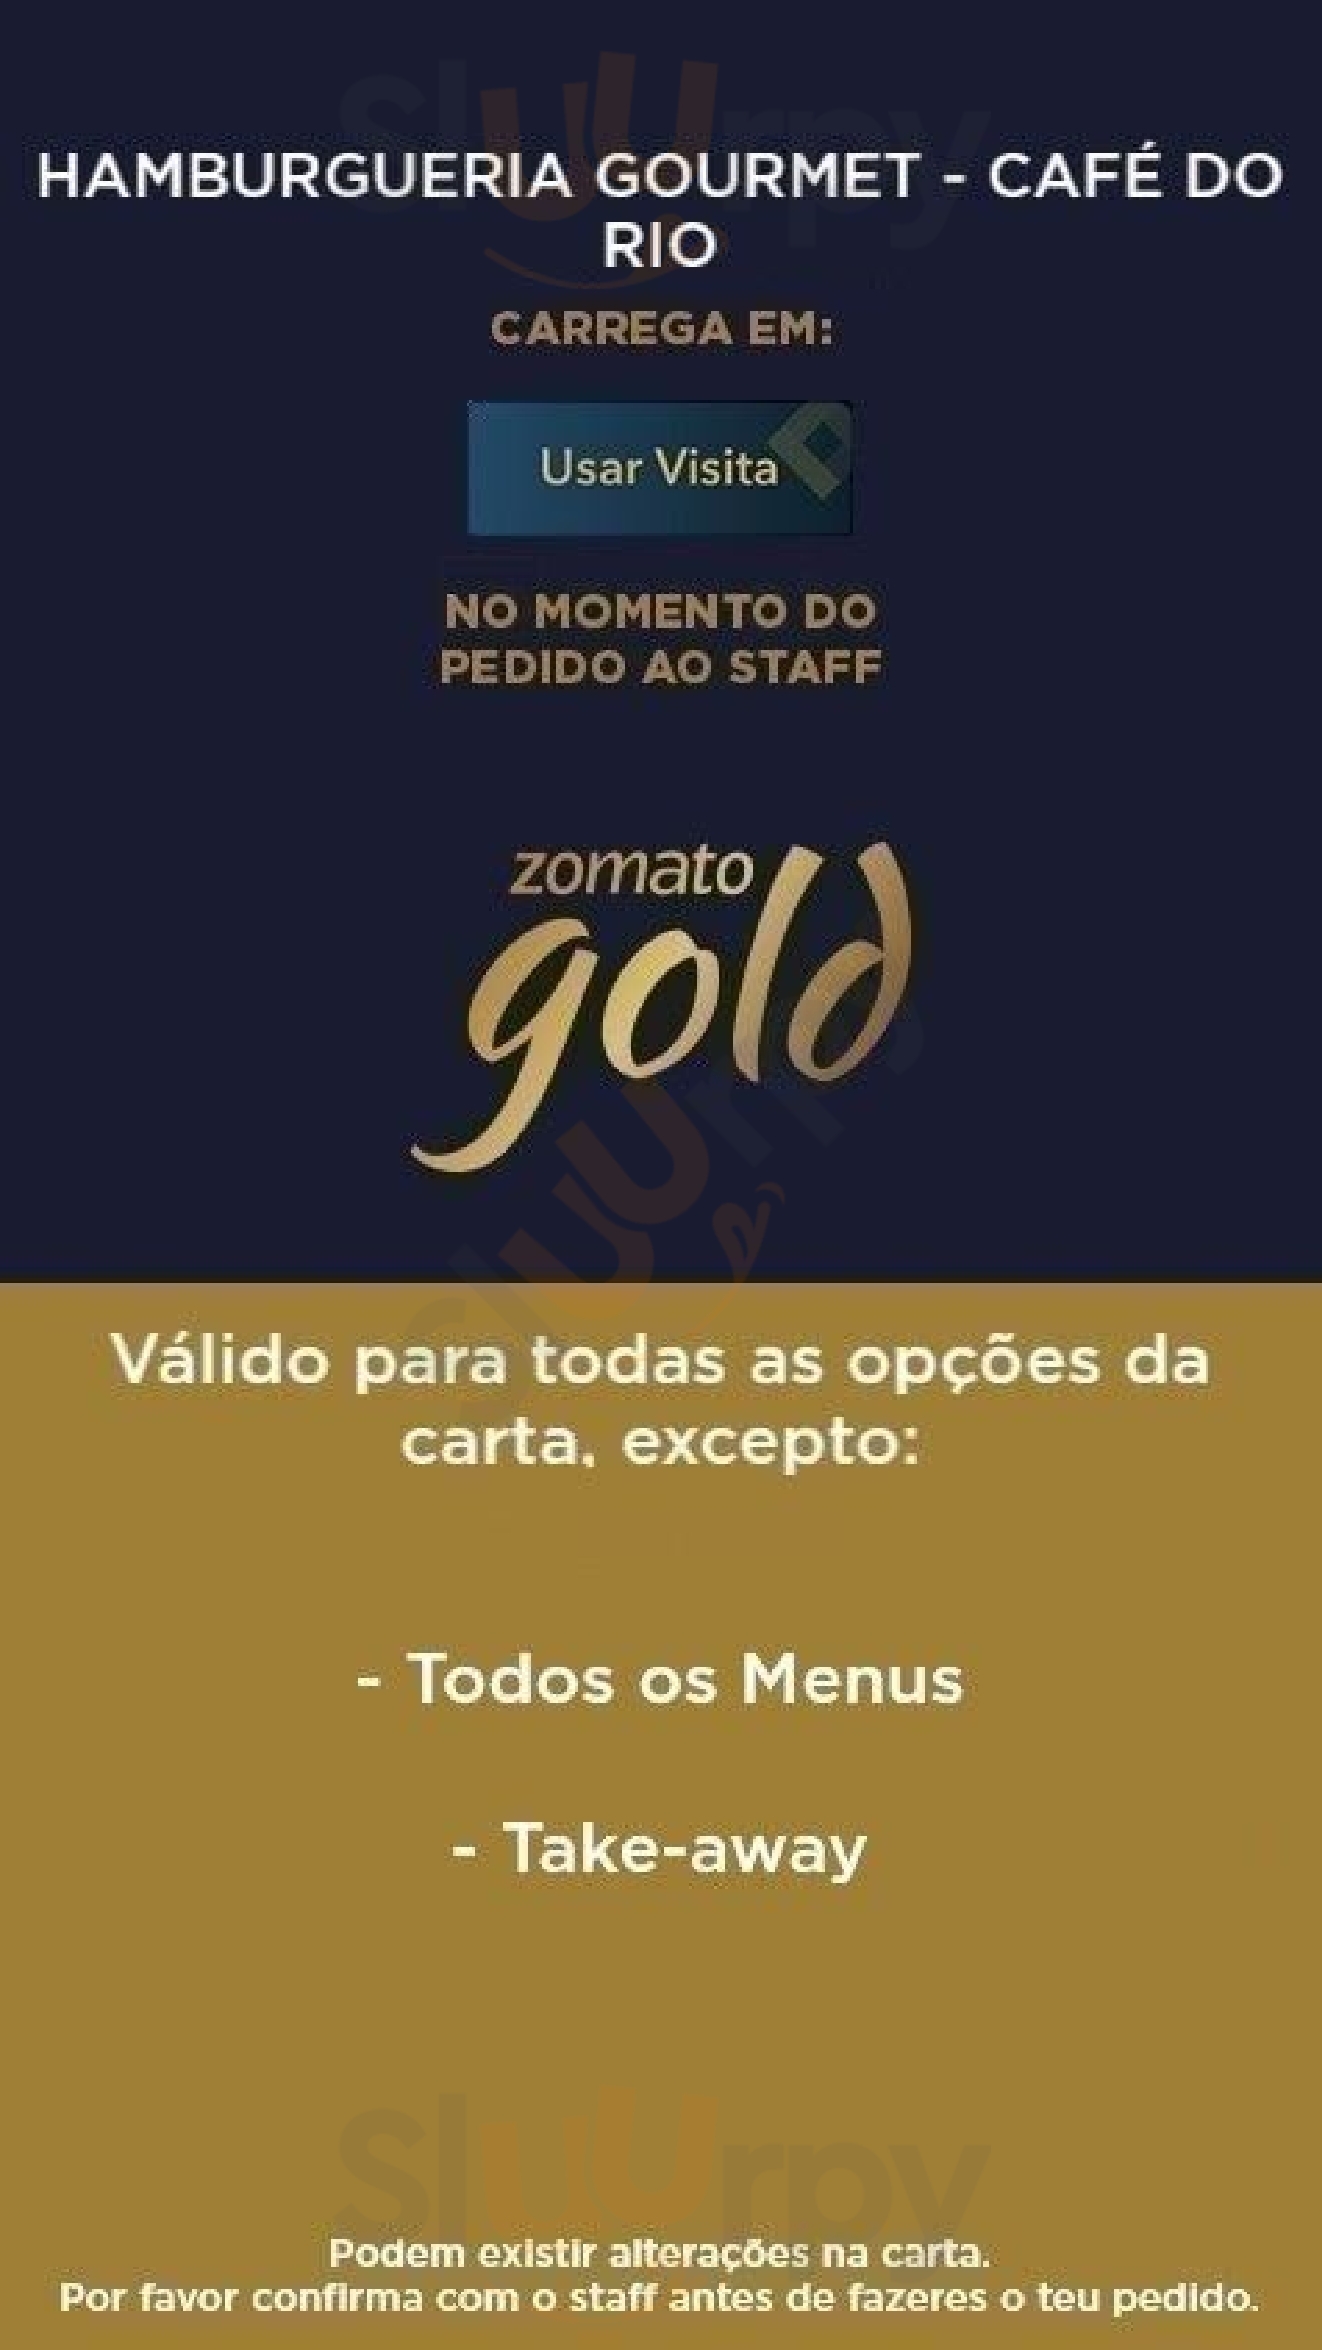 Hamburgueria Gourmet - Café Do Rio Lisboa Menu - 1